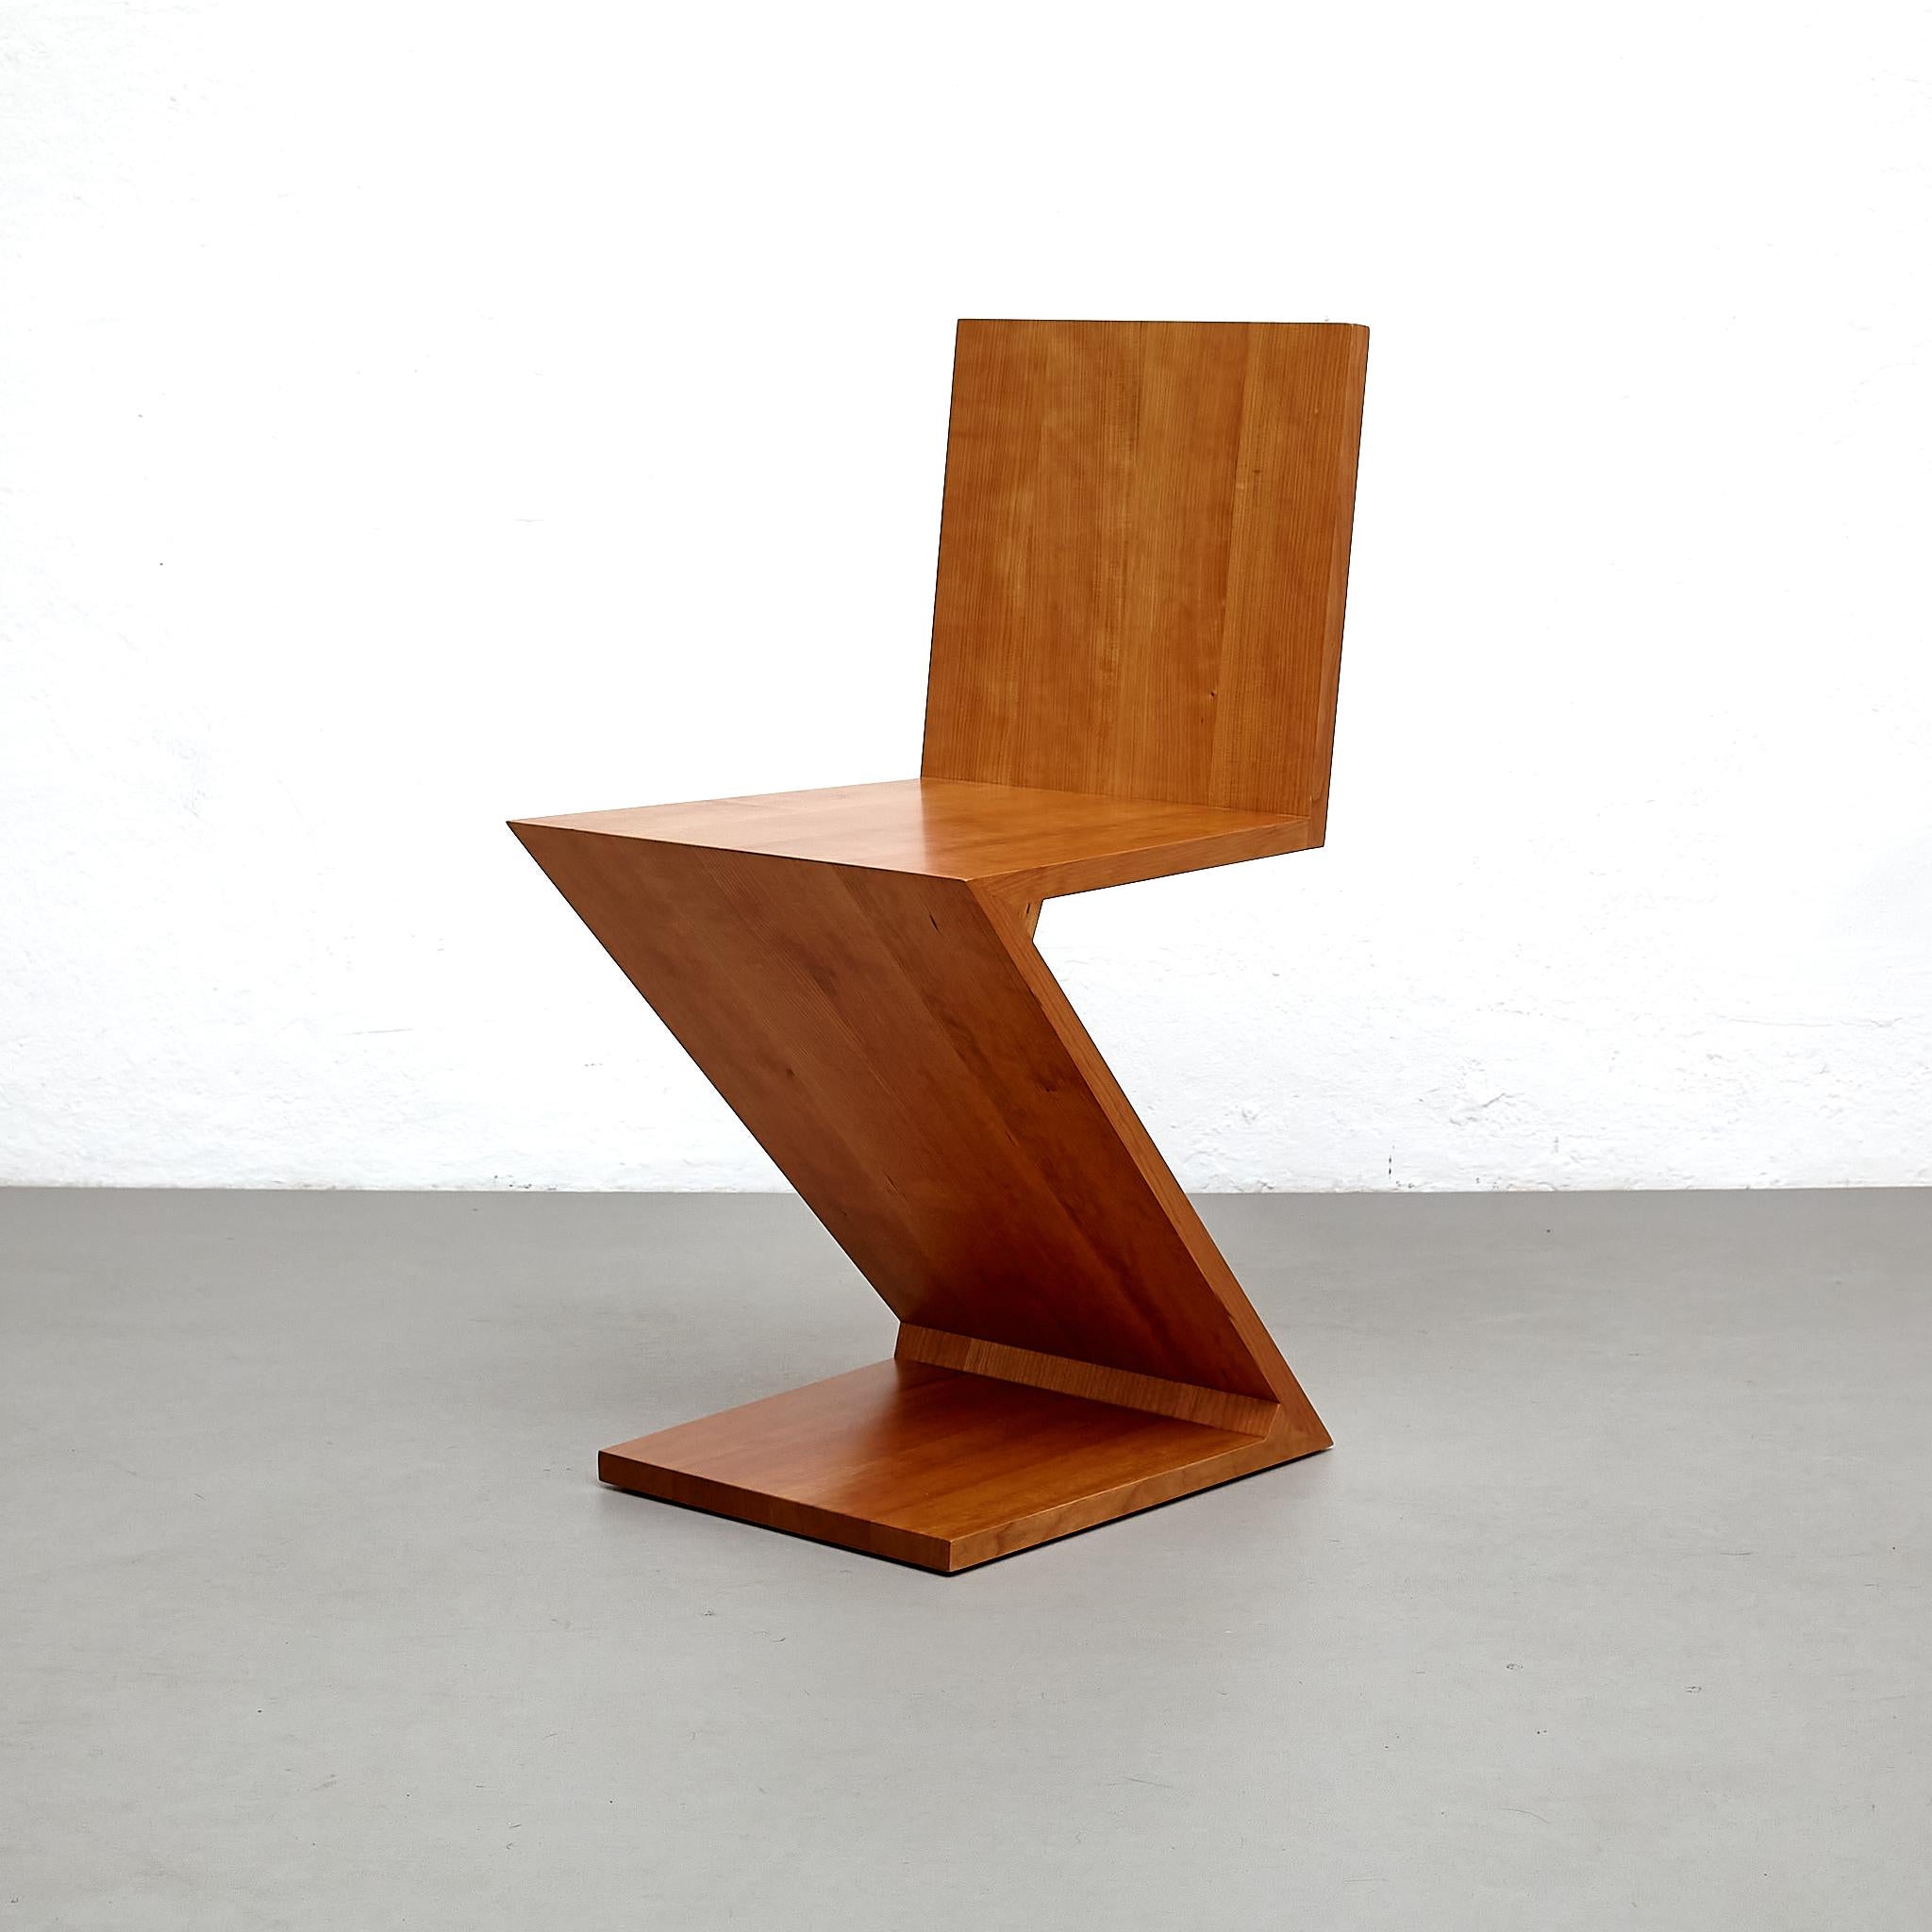 Stuhl, entworfen von Gerrit Thomas Rietveld im Jahr 1934. Neuauflage 1973/ 2011.

Hergestellt von Cassina in Italien.

MATERIALIEN:
Holz
 
Abmessungen:
T 43 cm x B 37 cm x H 74 cm (SH 43 cm)

Dieser von Gerrit Rietveld entworfene Stuhl ist